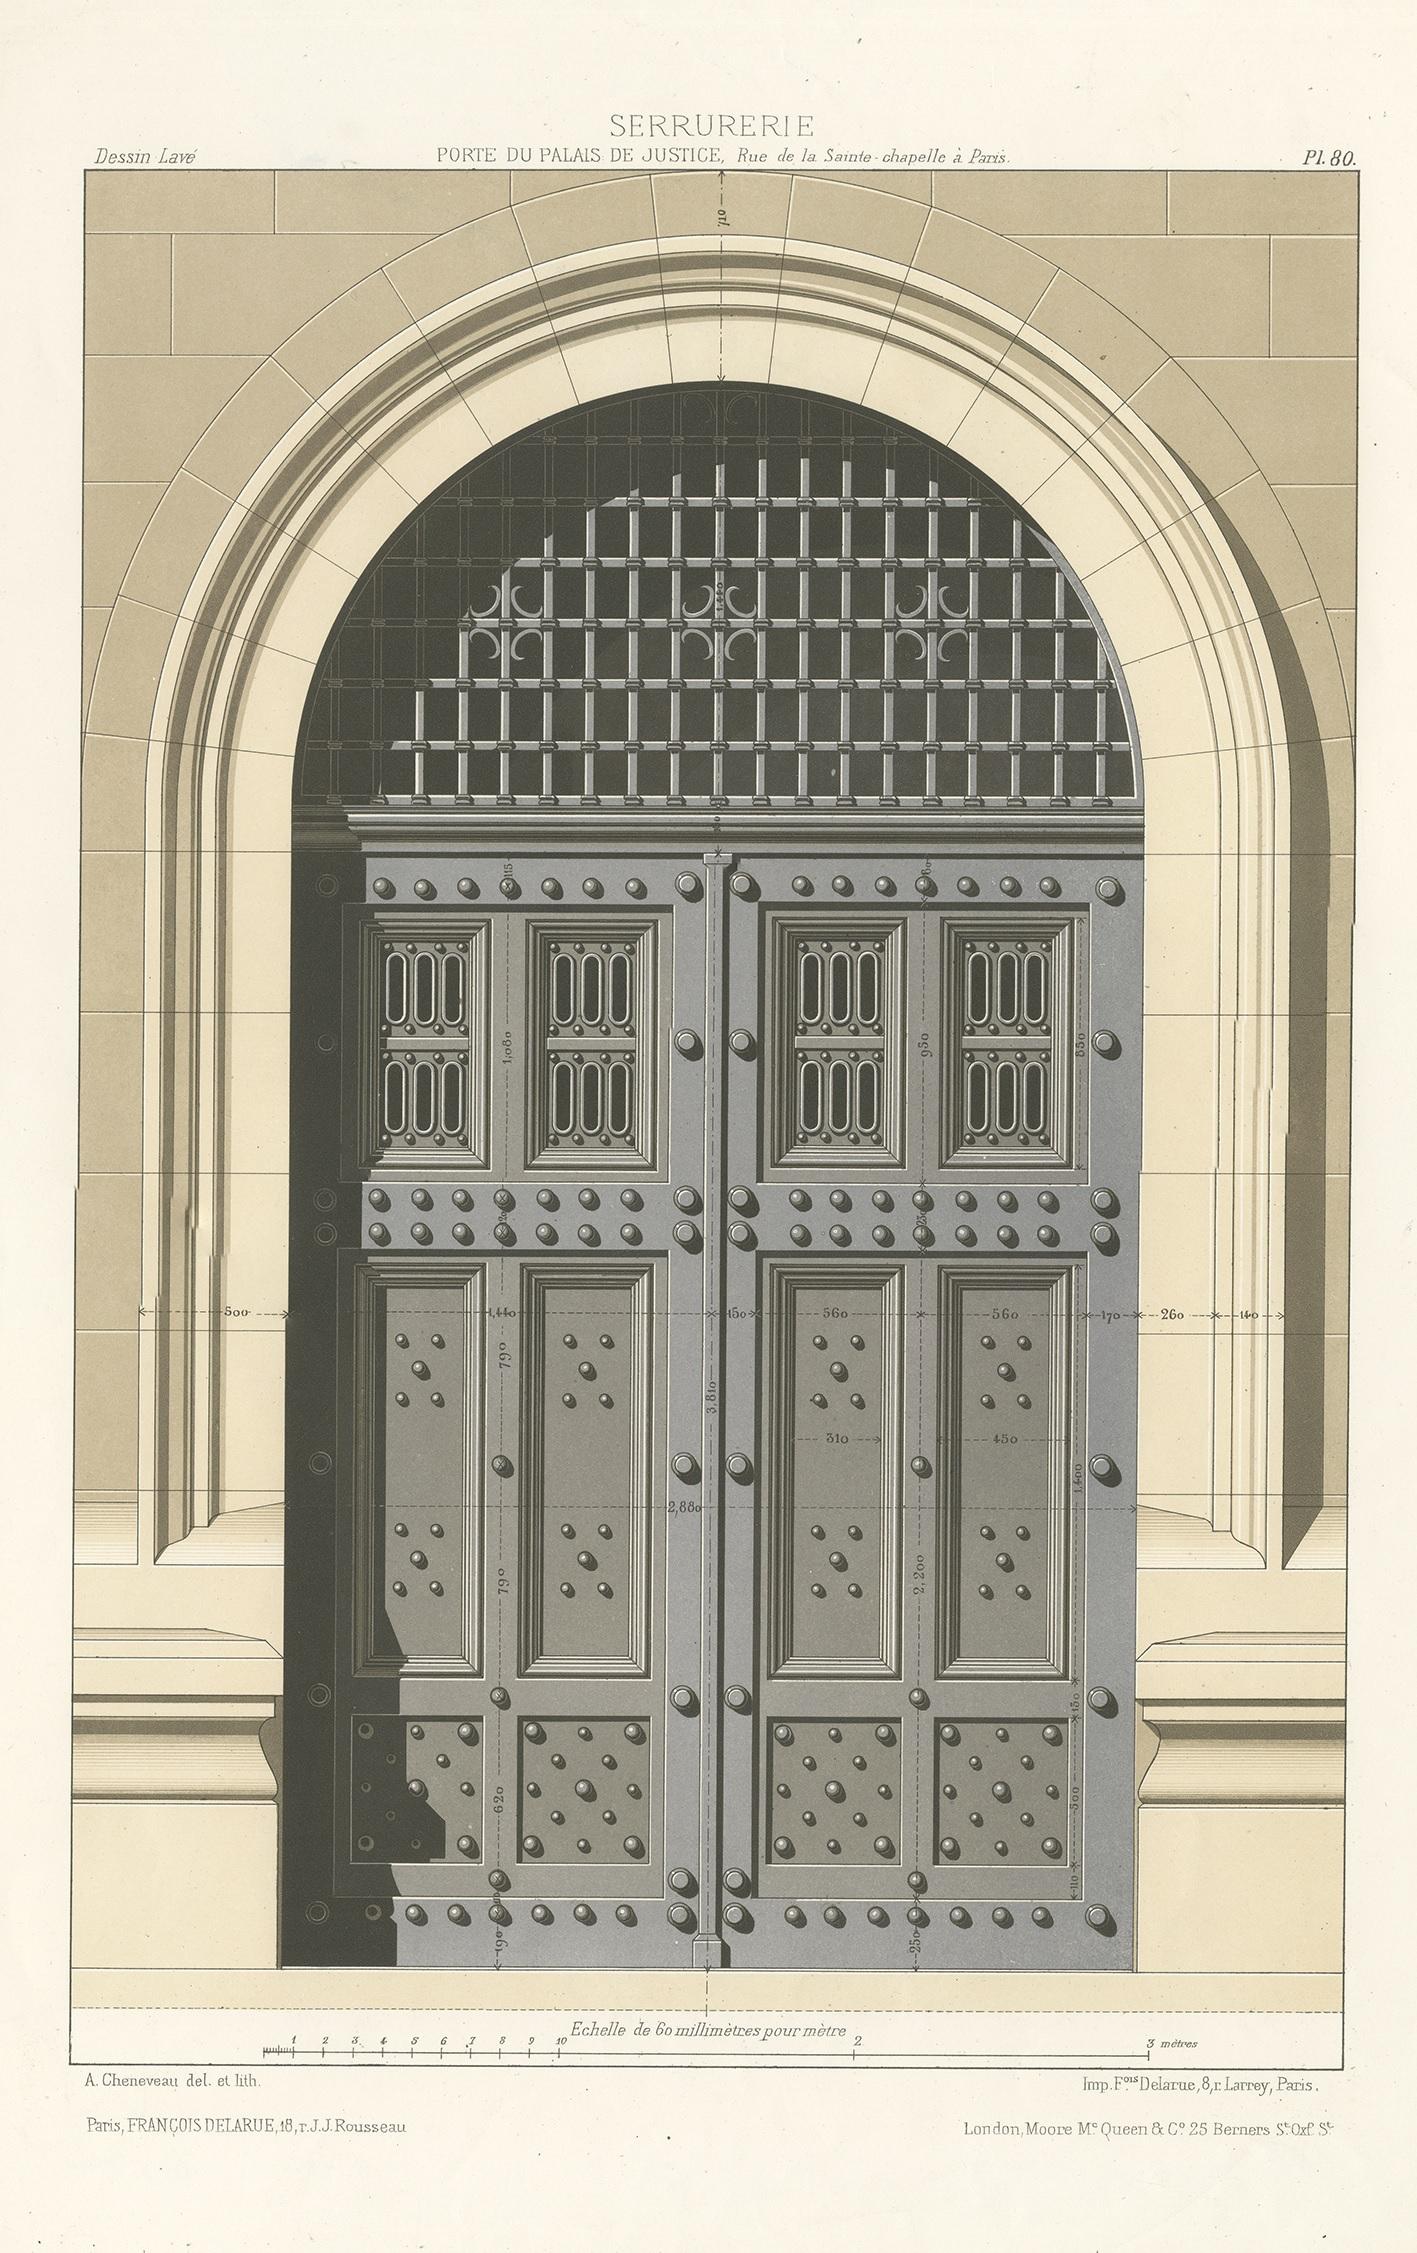 Antique print titled 'Serrurerie Porte du Palais de Justice, Rue de la Sainte à Paris'. Lithograph of one of the doors of the Palace of Justice in Paris. Published by Francois Delarue.